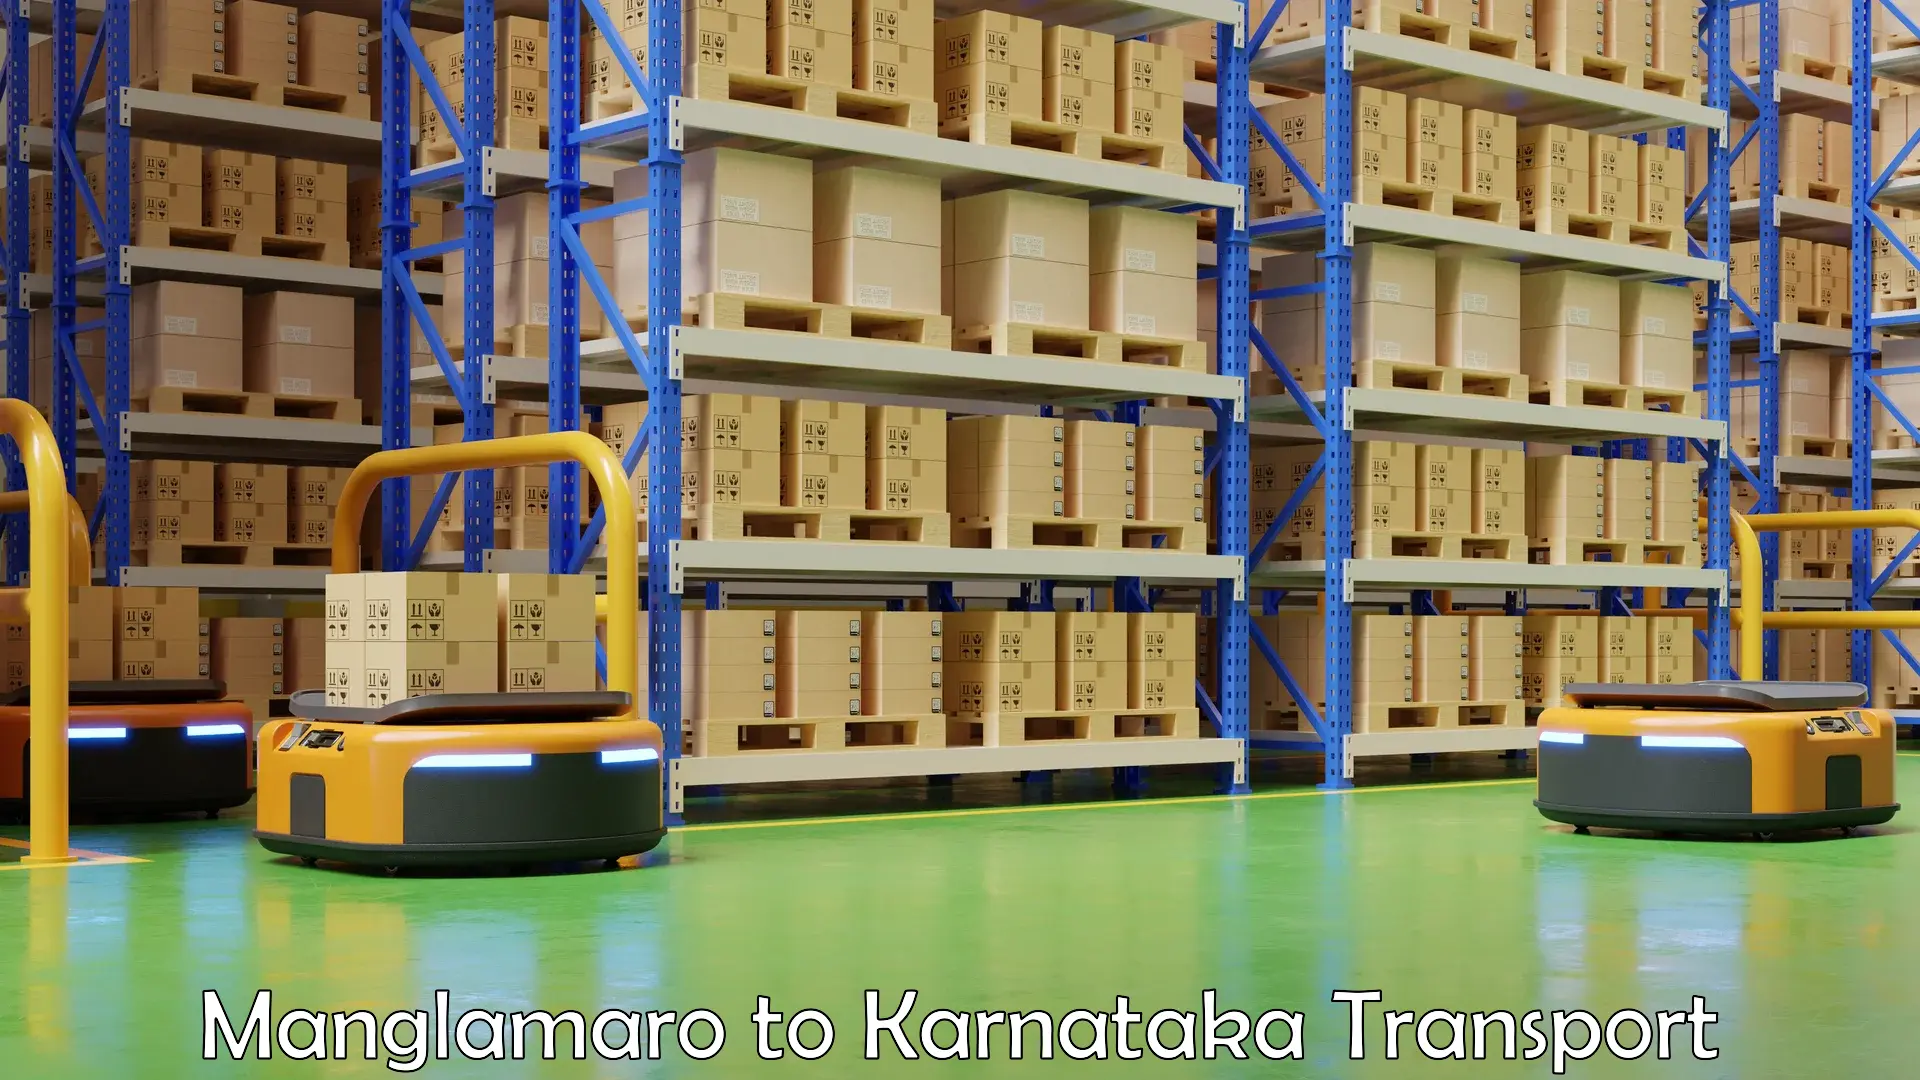 Shipping services Manglamaro to Karnataka